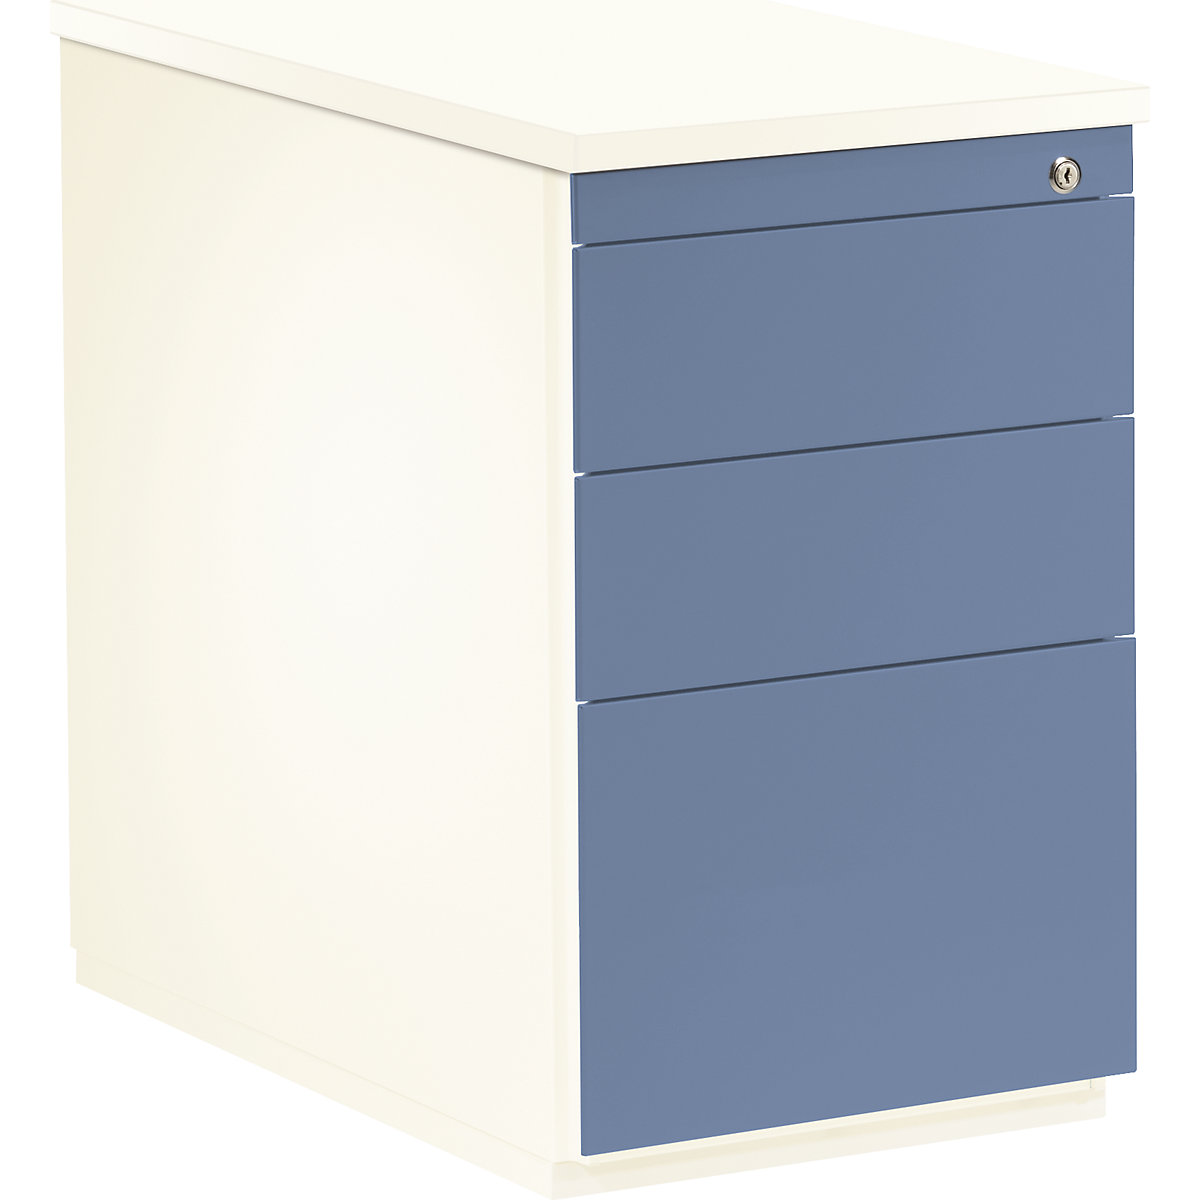 mauser Schubladencontainer, HxT 720 x 800 mm, 2 Materialschübe, 1 Hängeregistratur, reinweiß / taubenblau / reinweiß